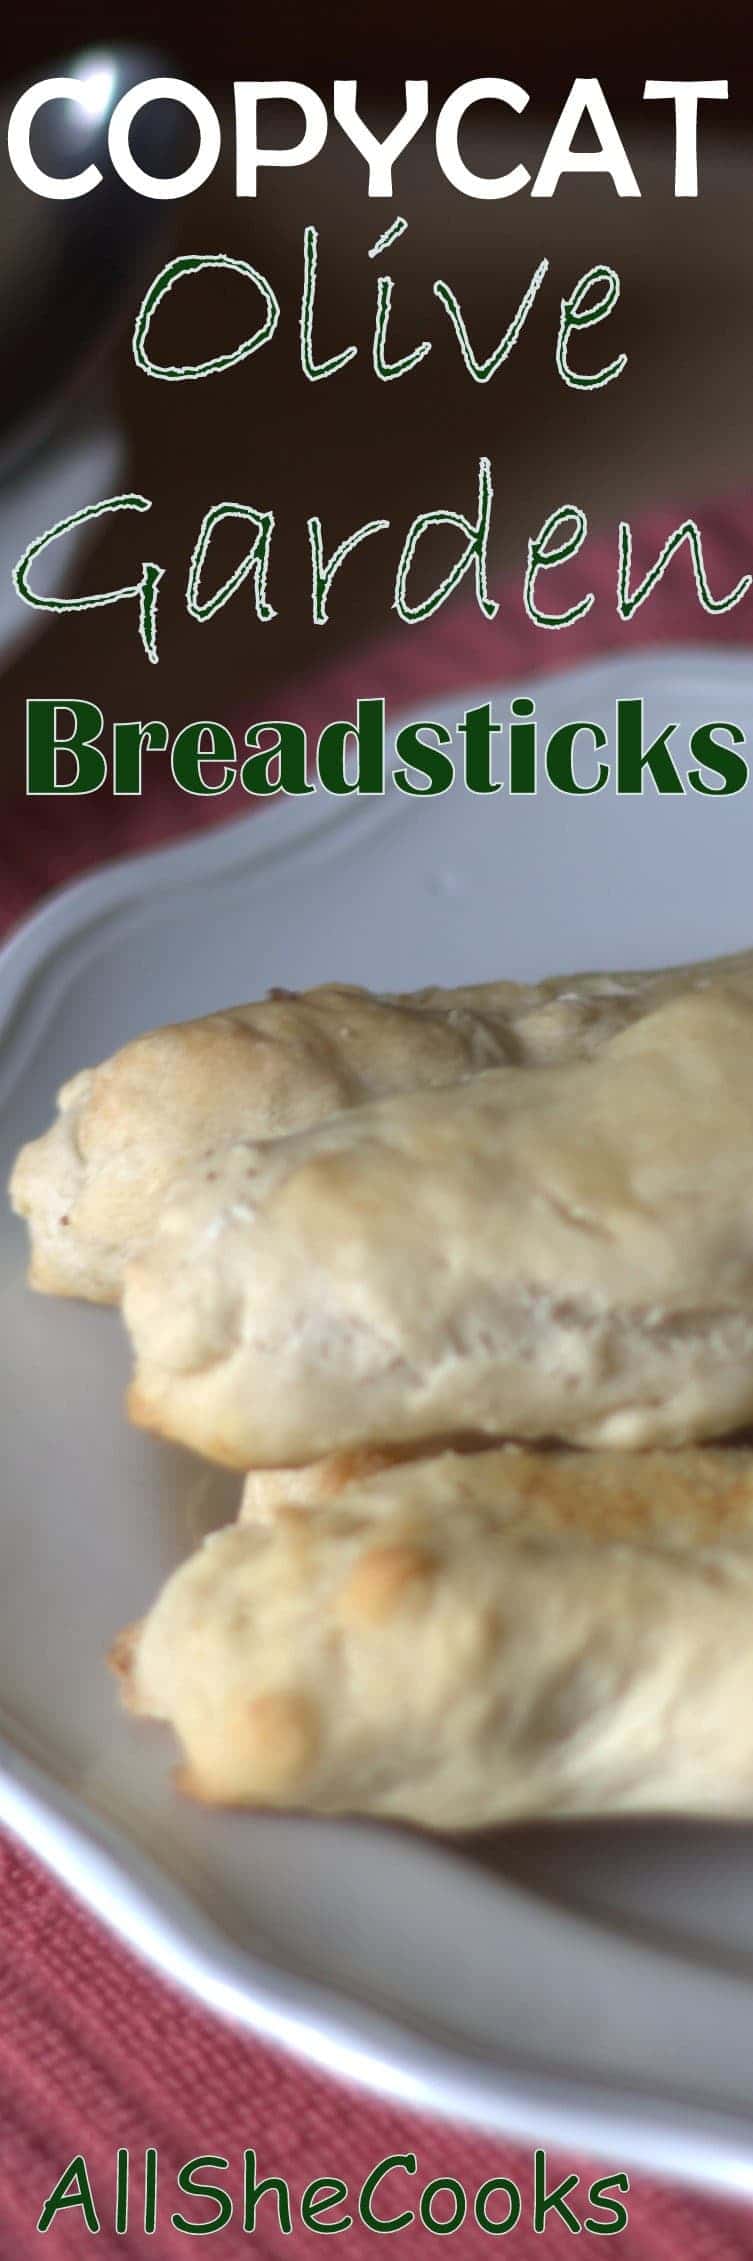 Copycat Olive Garden Breadsticks - All She Cooks